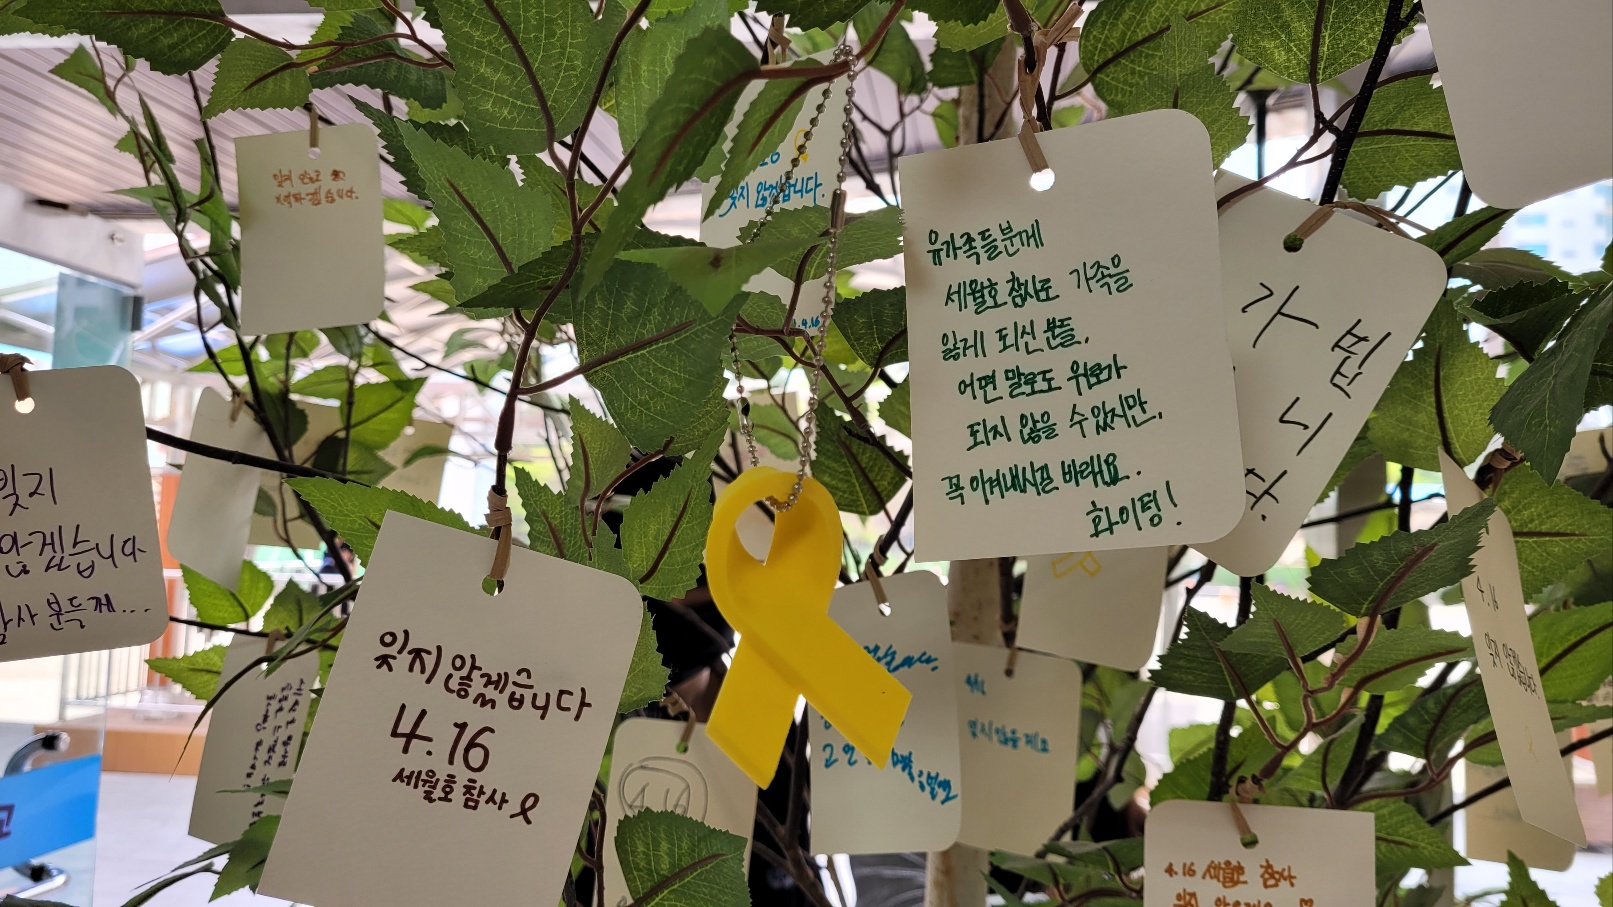 경기 고양시 한수중 학생들이 만든 세월호 기억나무. 학생들의 추모 메시지가 빼곡하다. 강양희 교사 제공